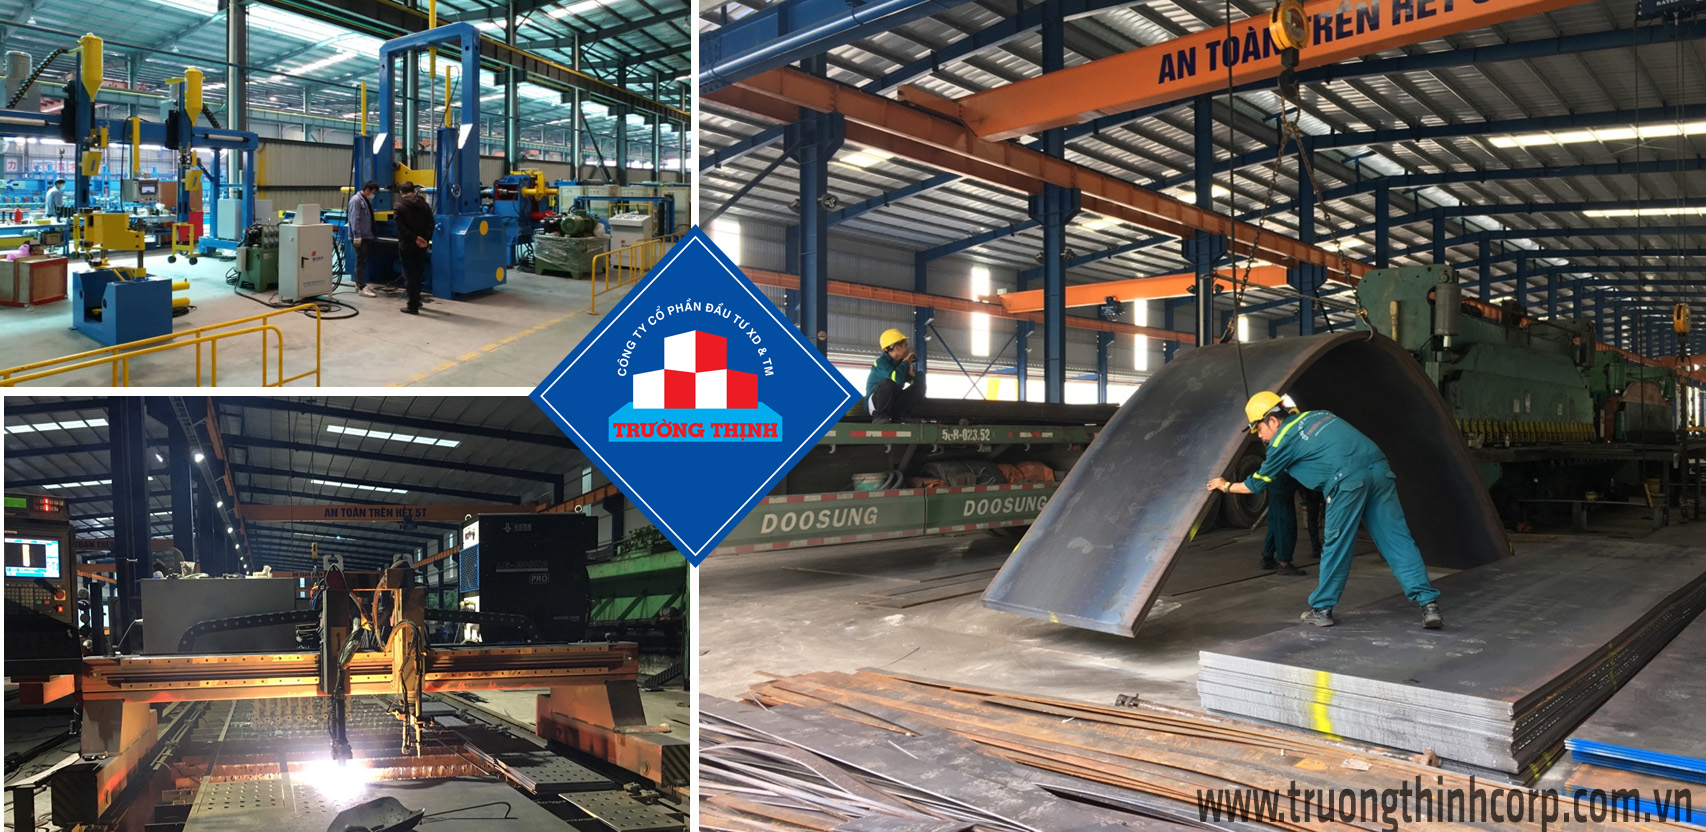 Quy trình sản xuất kết cấu thép tại nhà máy được tự động hóa theo tiêu chuẩn quản lý chất lượng ISO 9001-2015